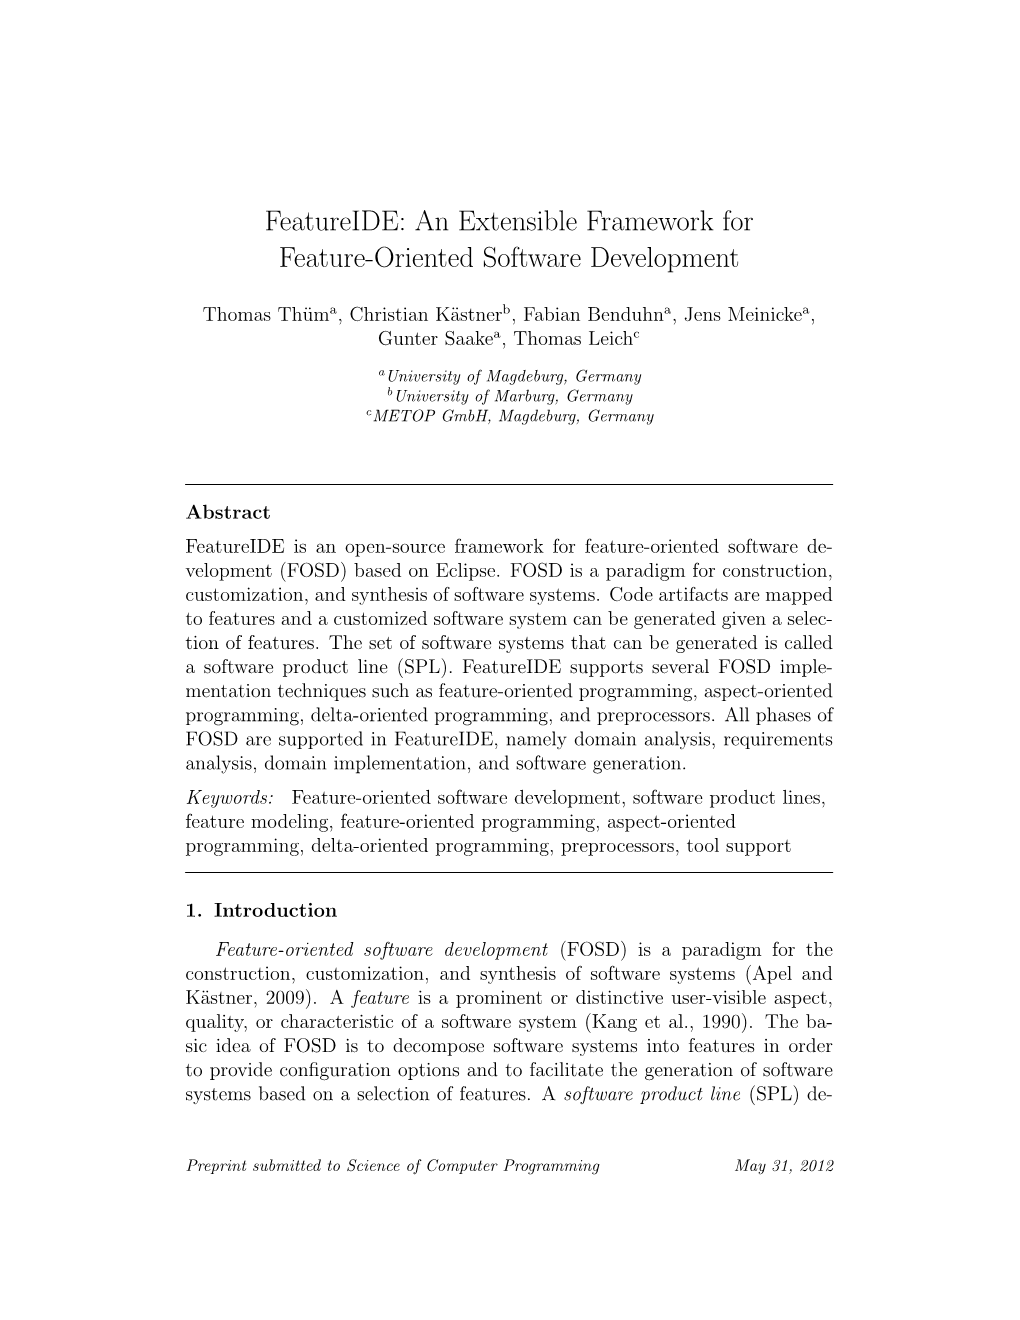 Featureide: an Extensible Framework for Feature-Oriented Software Development